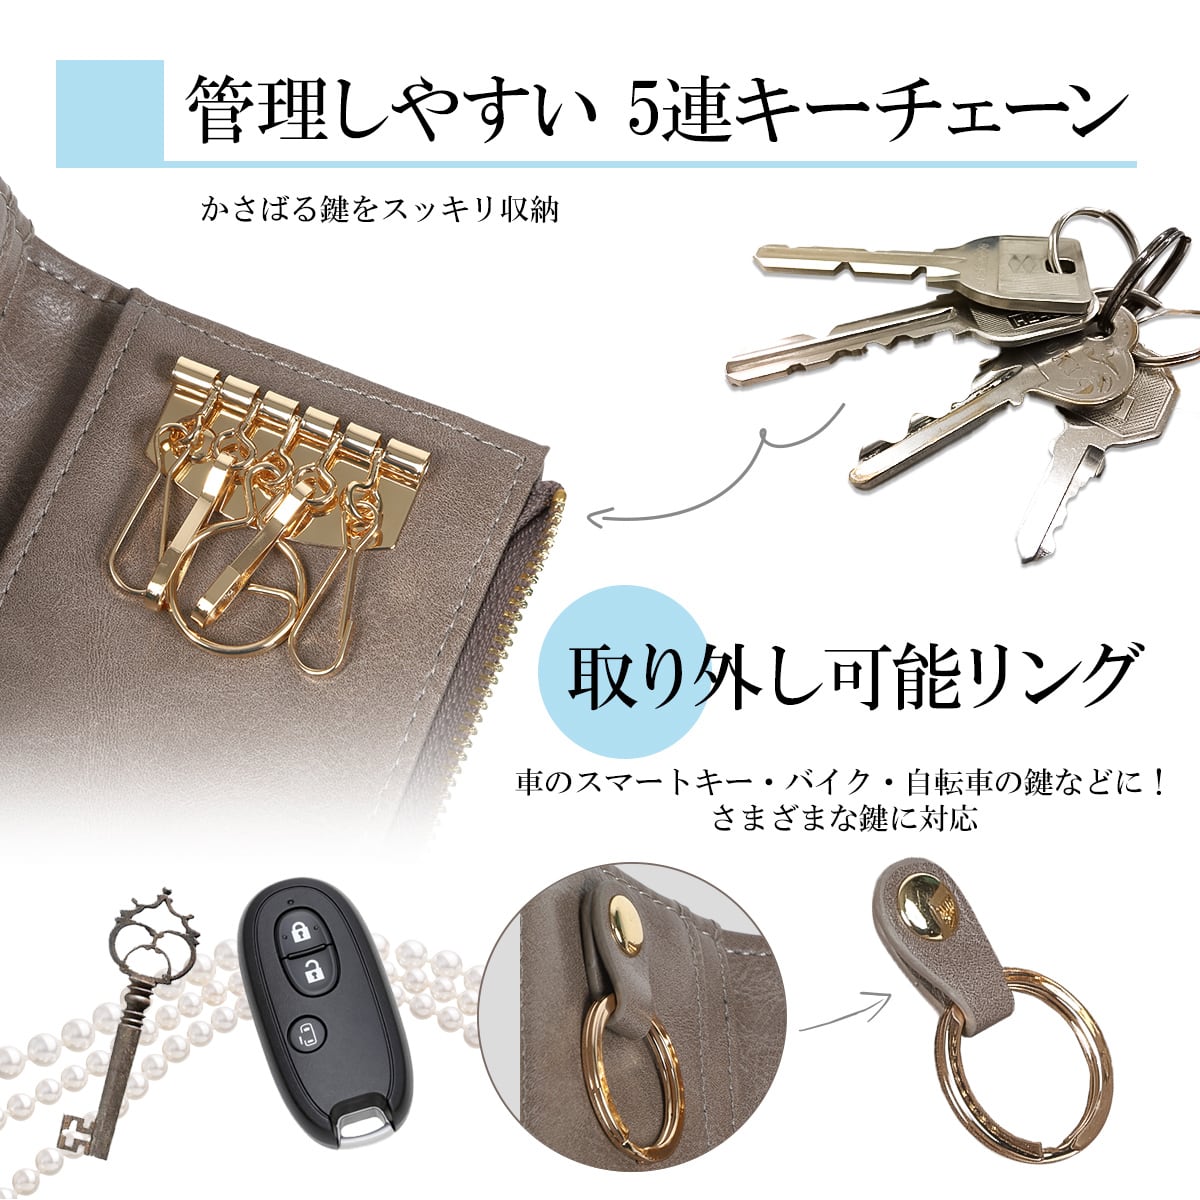 ピソラロPisoraro太メッシュキーケース5連キーケースミニ財布メッシュ編み込み送料無料